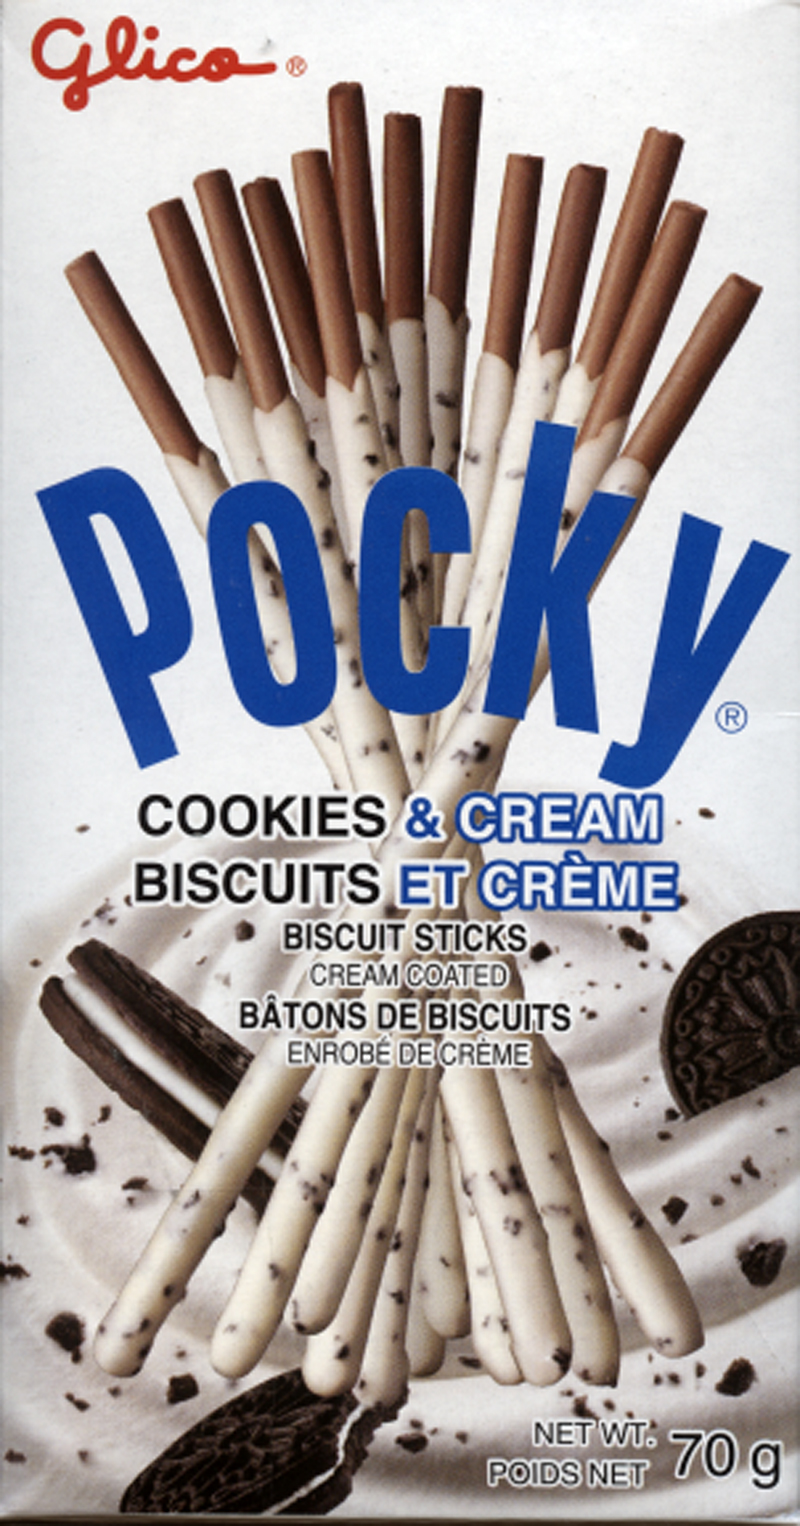 Biscuits enrobés de chocolat Pocky de Glico en bâtonnets 40 g